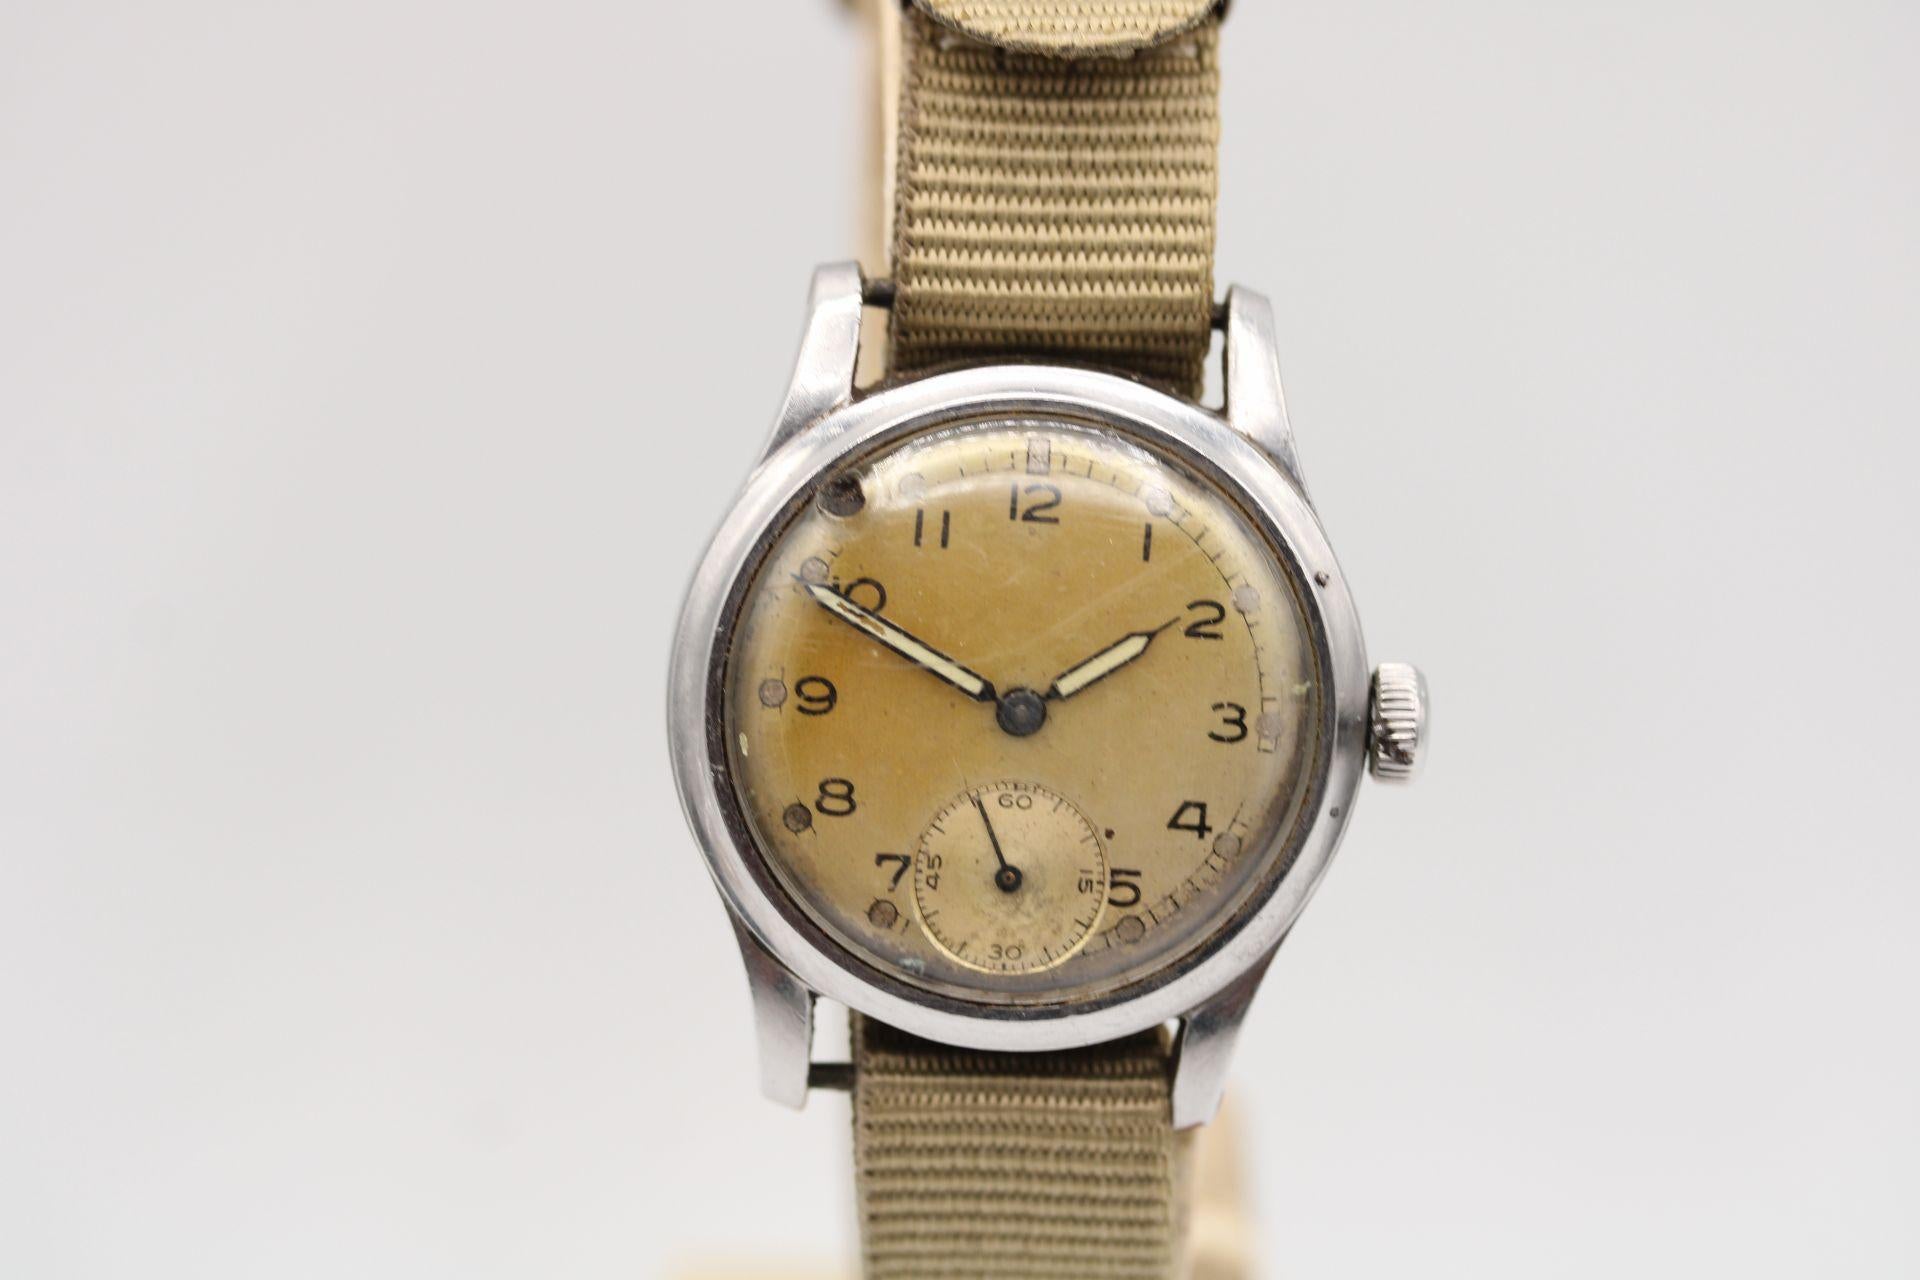 Regardez : ATP British Military Unsigned (non signé)
Numéro d'inventaire : CHW5298
Prix : £500.00

Au début de la seconde guerre mondiale, l'armée britannique avait besoin de montres pour ses troupes.
combattre à l'étranger. Ils ont acquis des